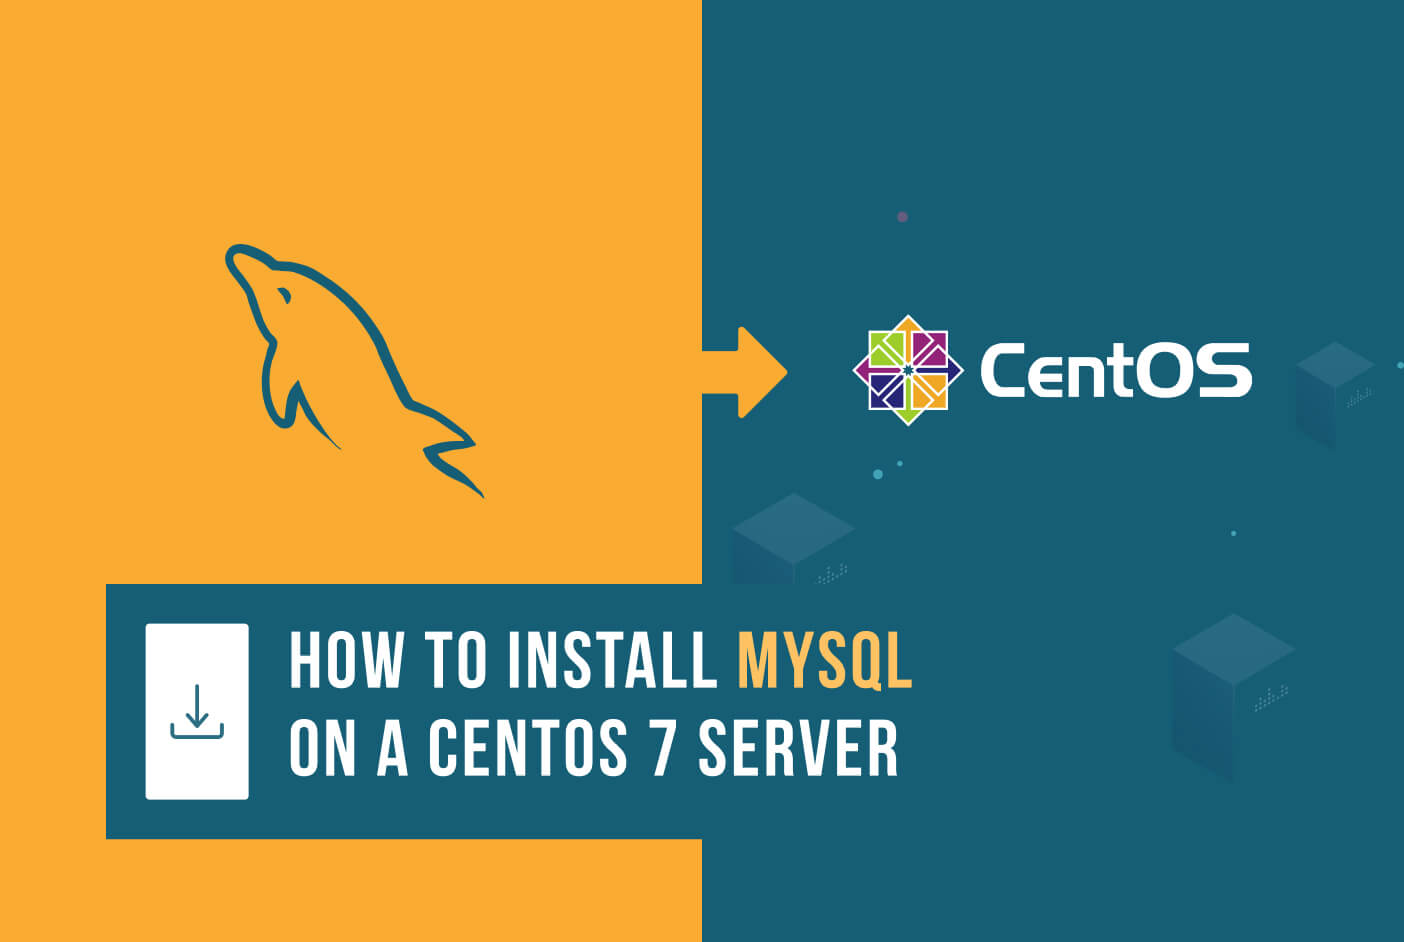 HOW TO Install MySQL on a CentOS 7 Server